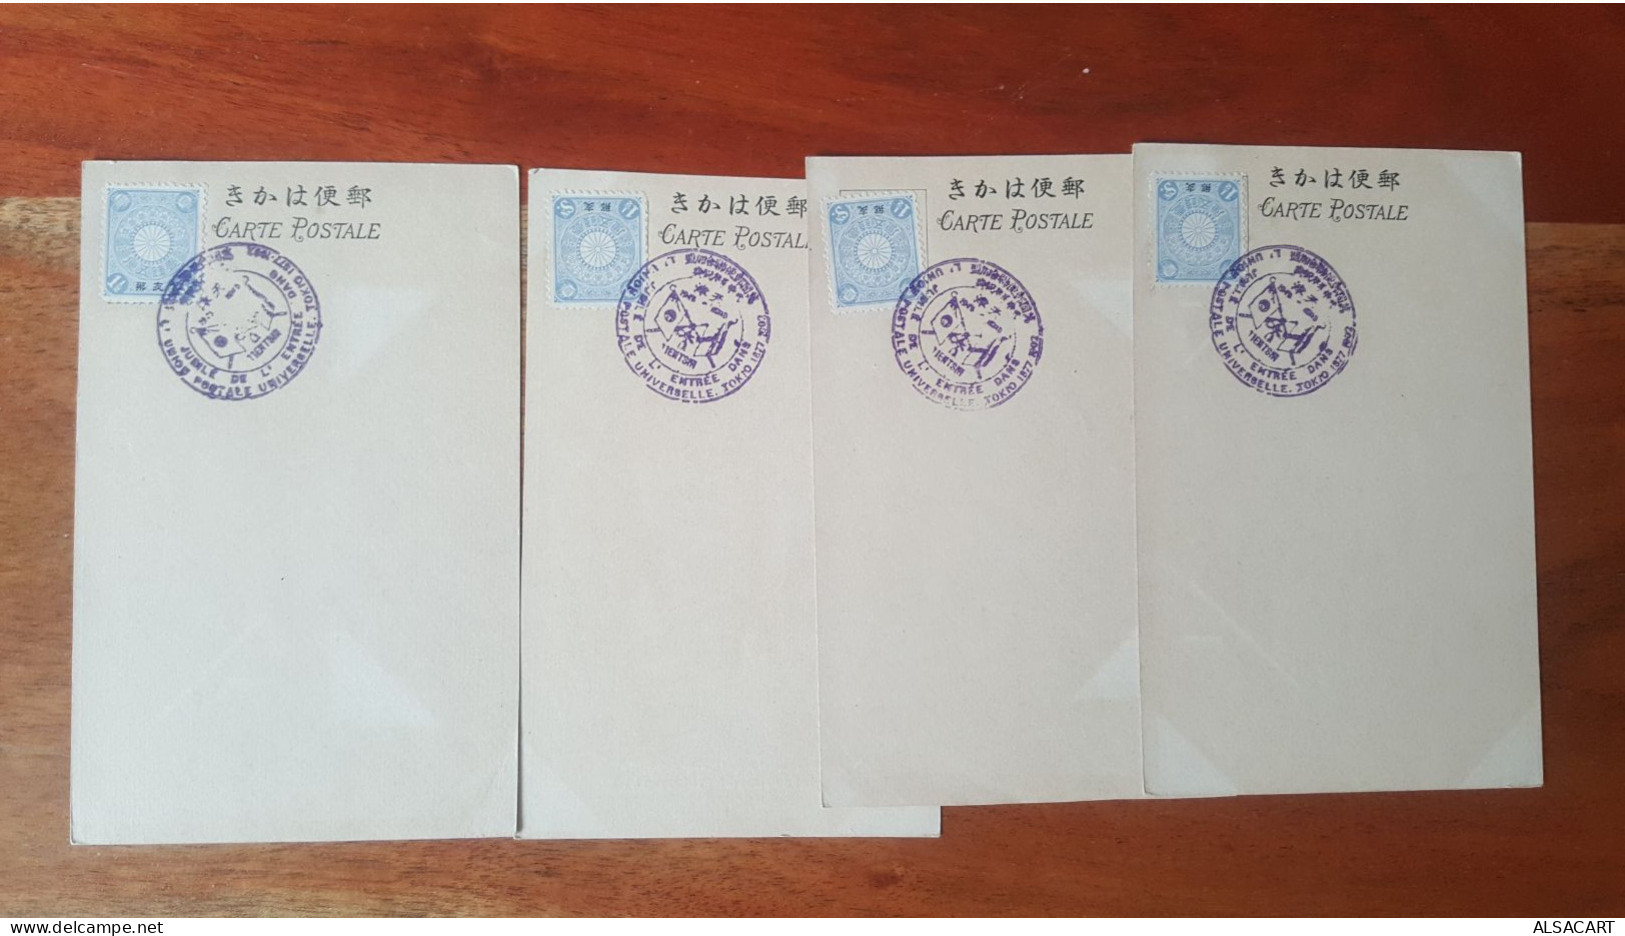 4 Cartes  Jubilé De L'entrée De L'union Postale Universelle Tokio 1877-1902 , Cachet - Tokyo